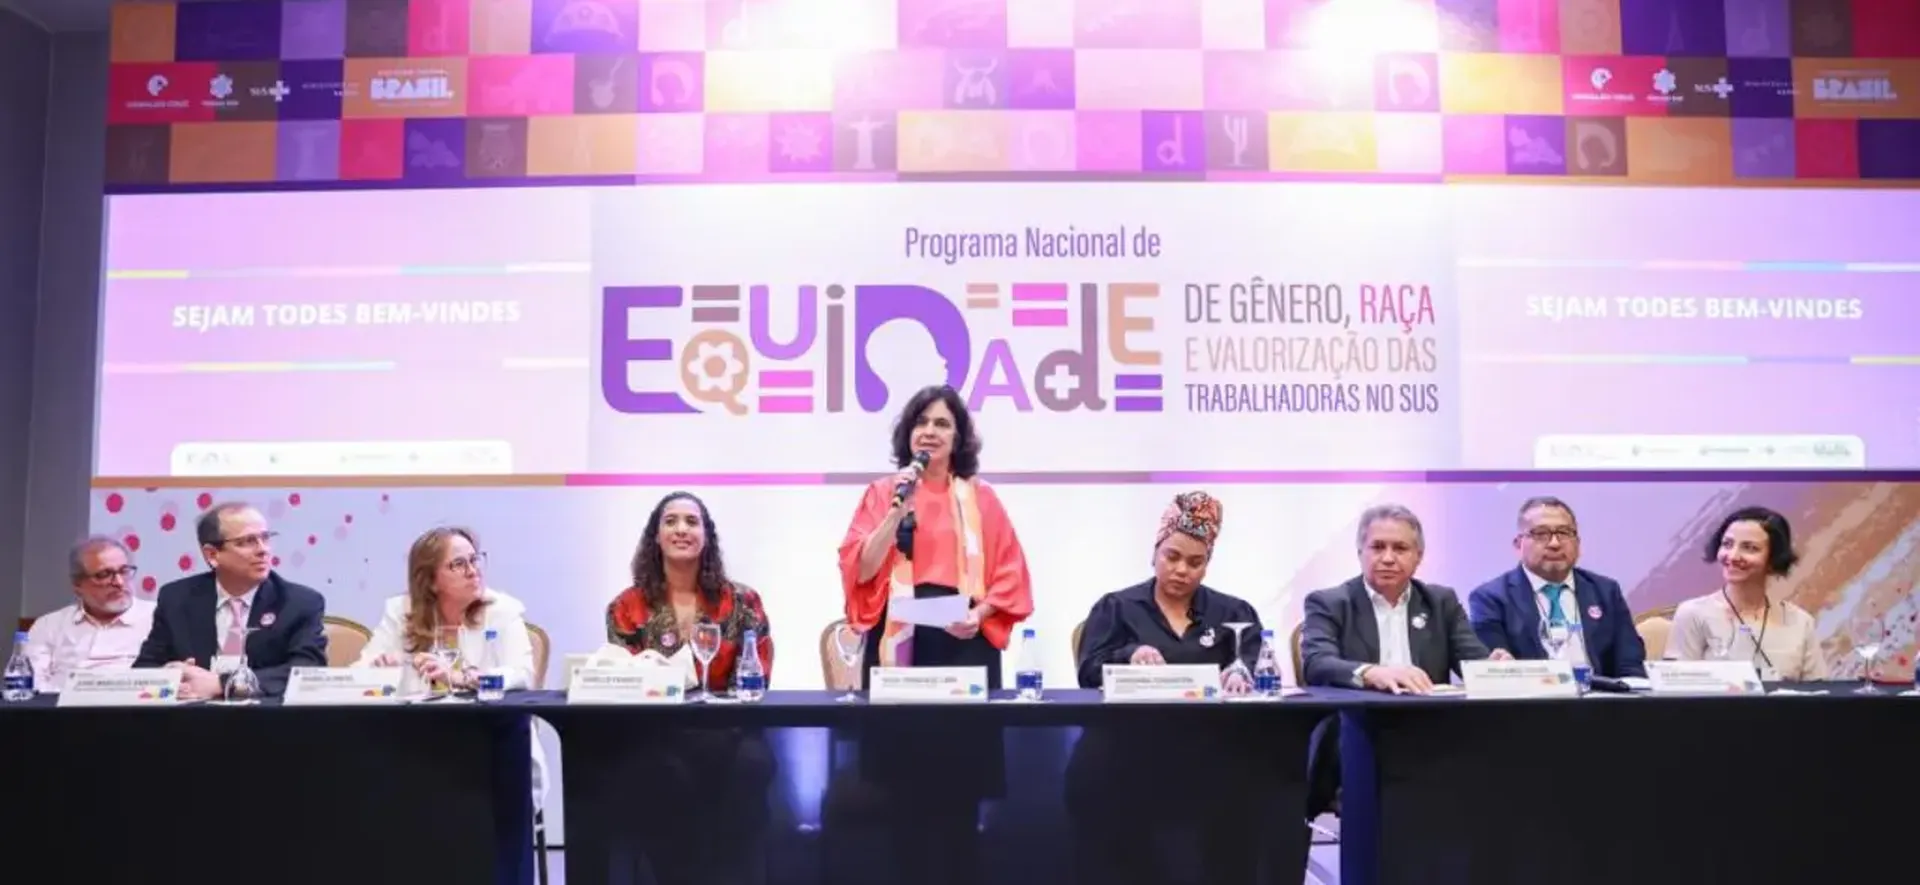 Ministério da Saúde realiza primeira oficina do Programa Nacional de Equidade de Gênero, Raça e Valorização das Trabalhadoras no SUS